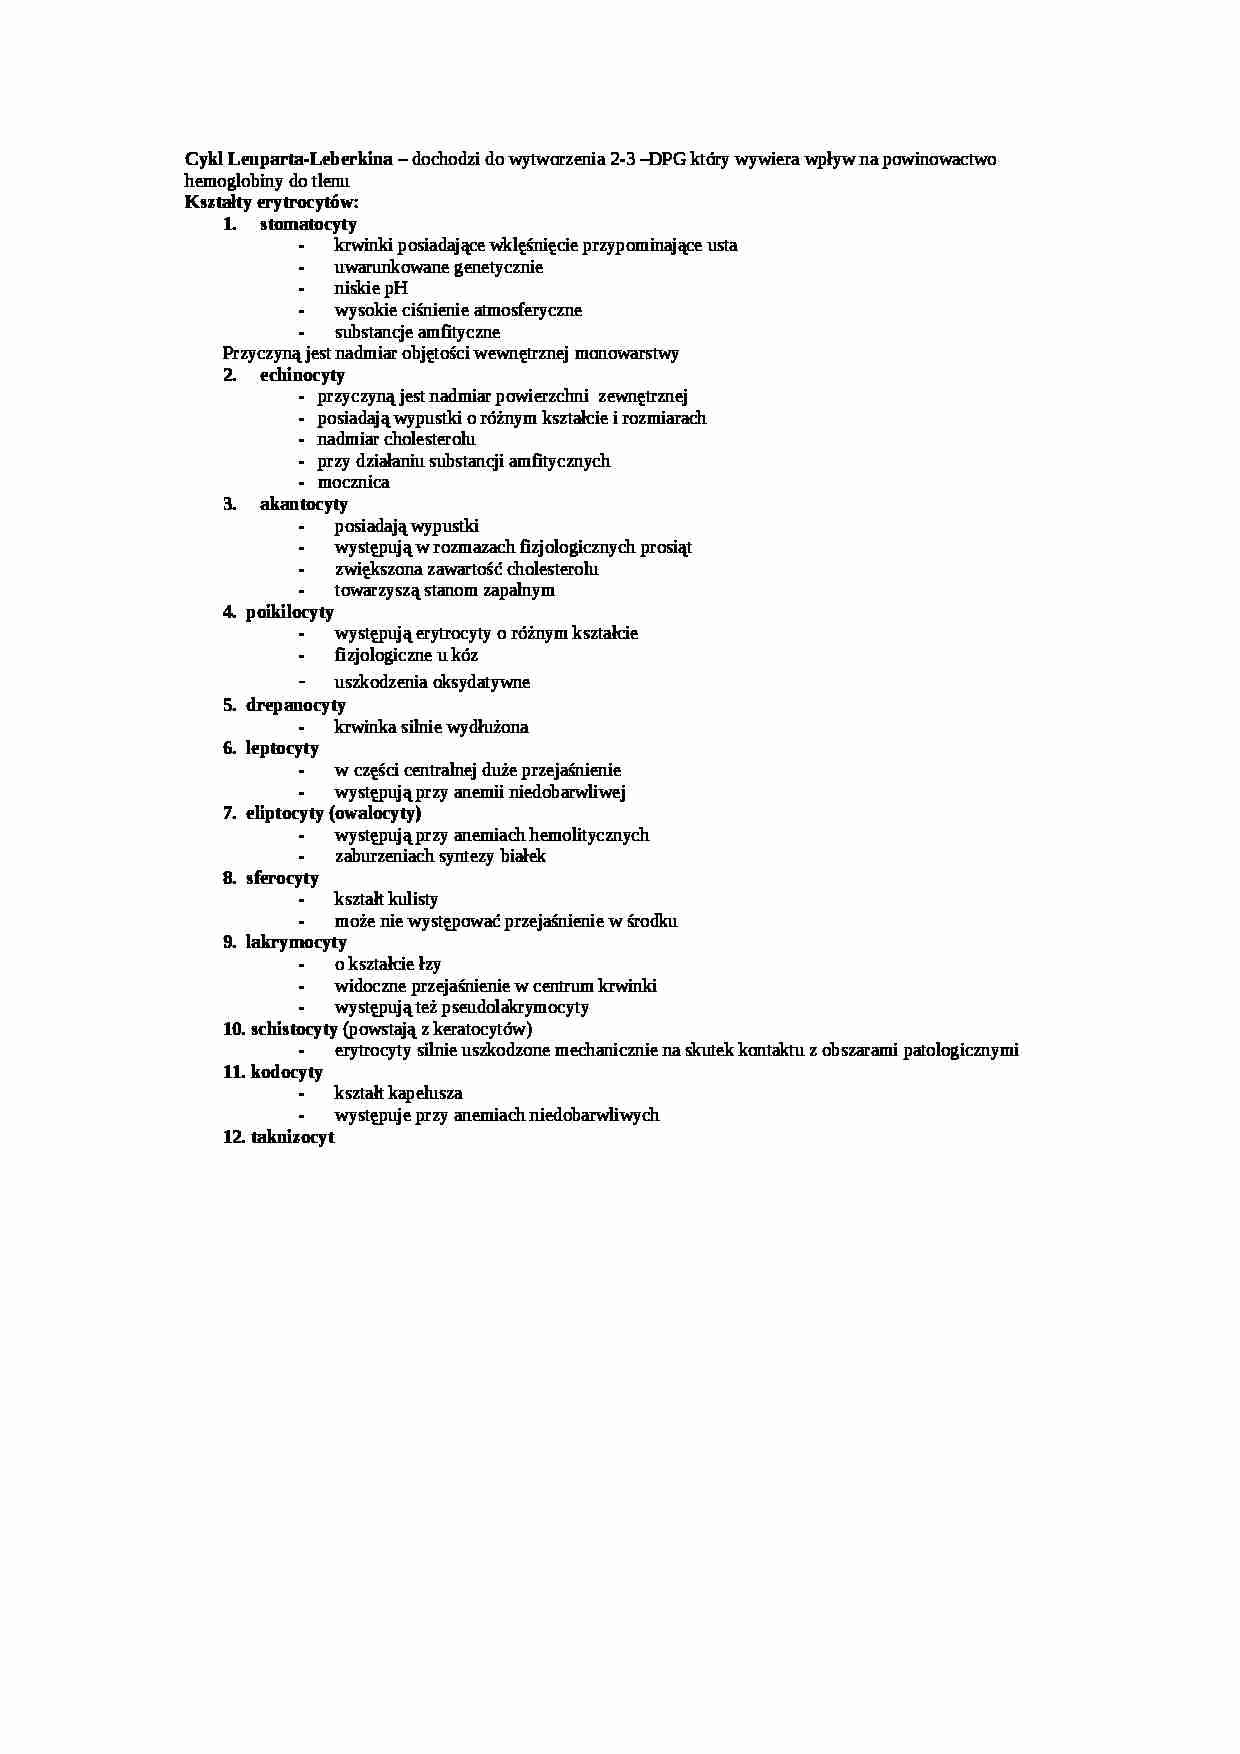 Wykład - cykl Leuparta-Leberkina, sem  IV - strona 1